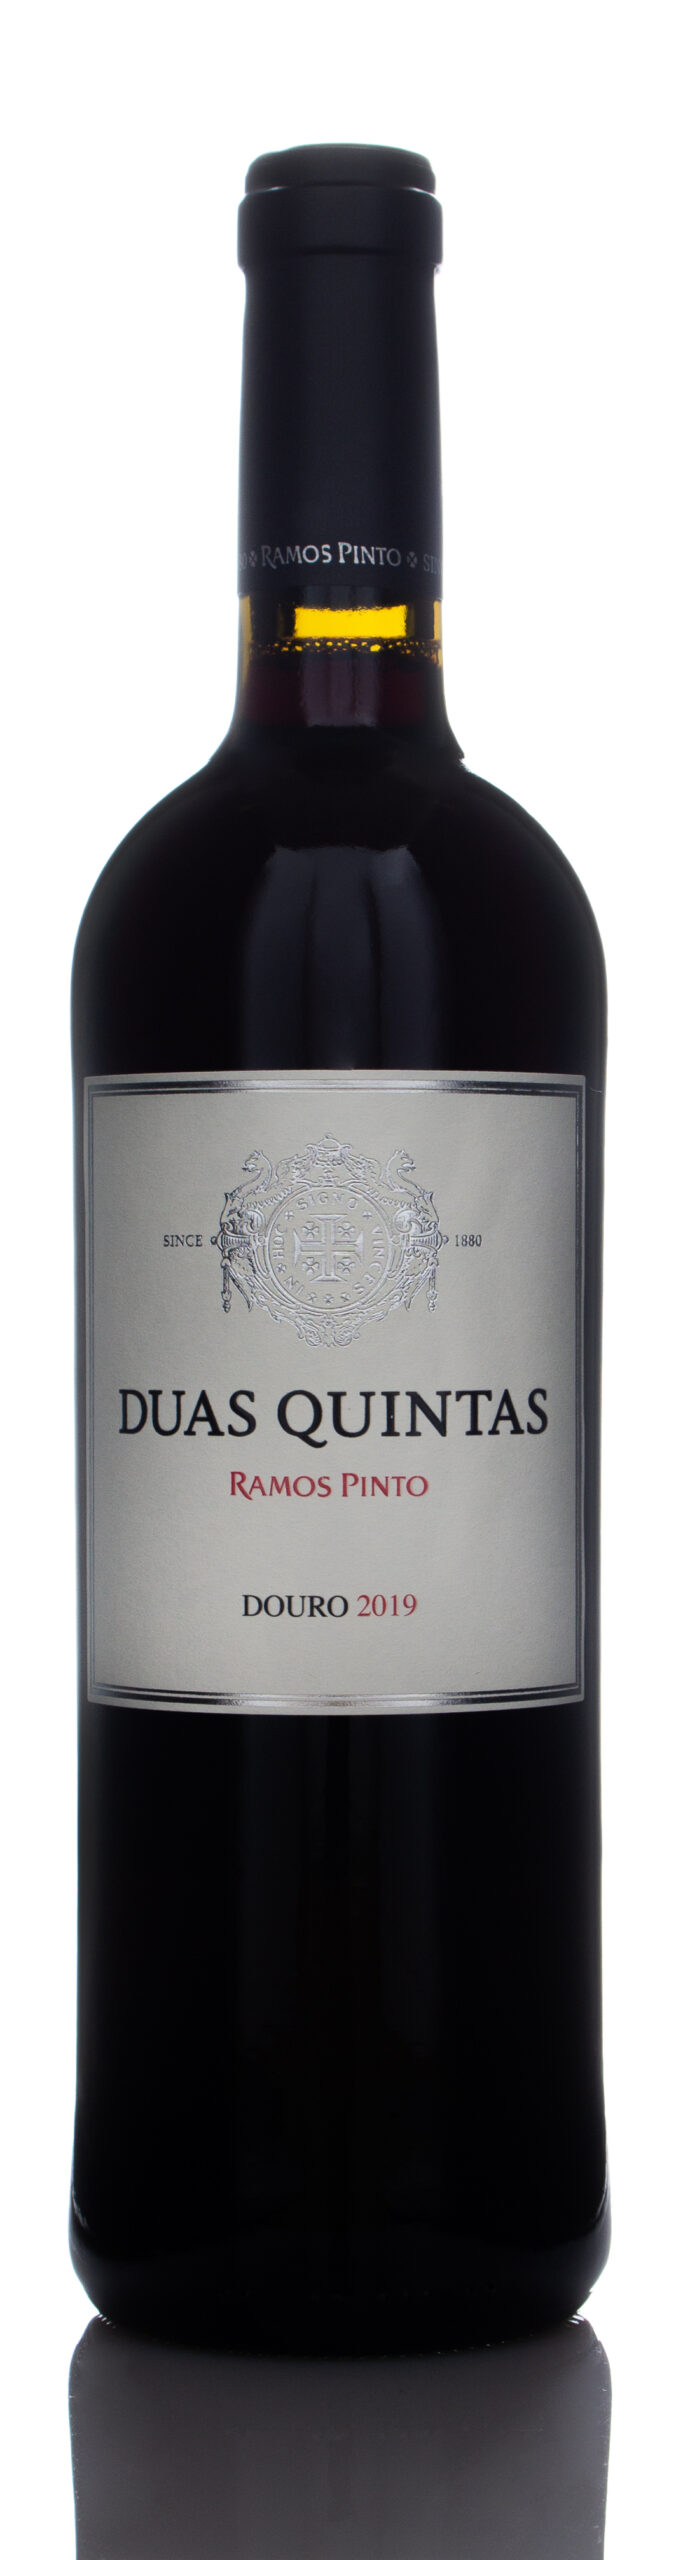 2019 Ramos Pinto Duas Quintas Tinto, Douro